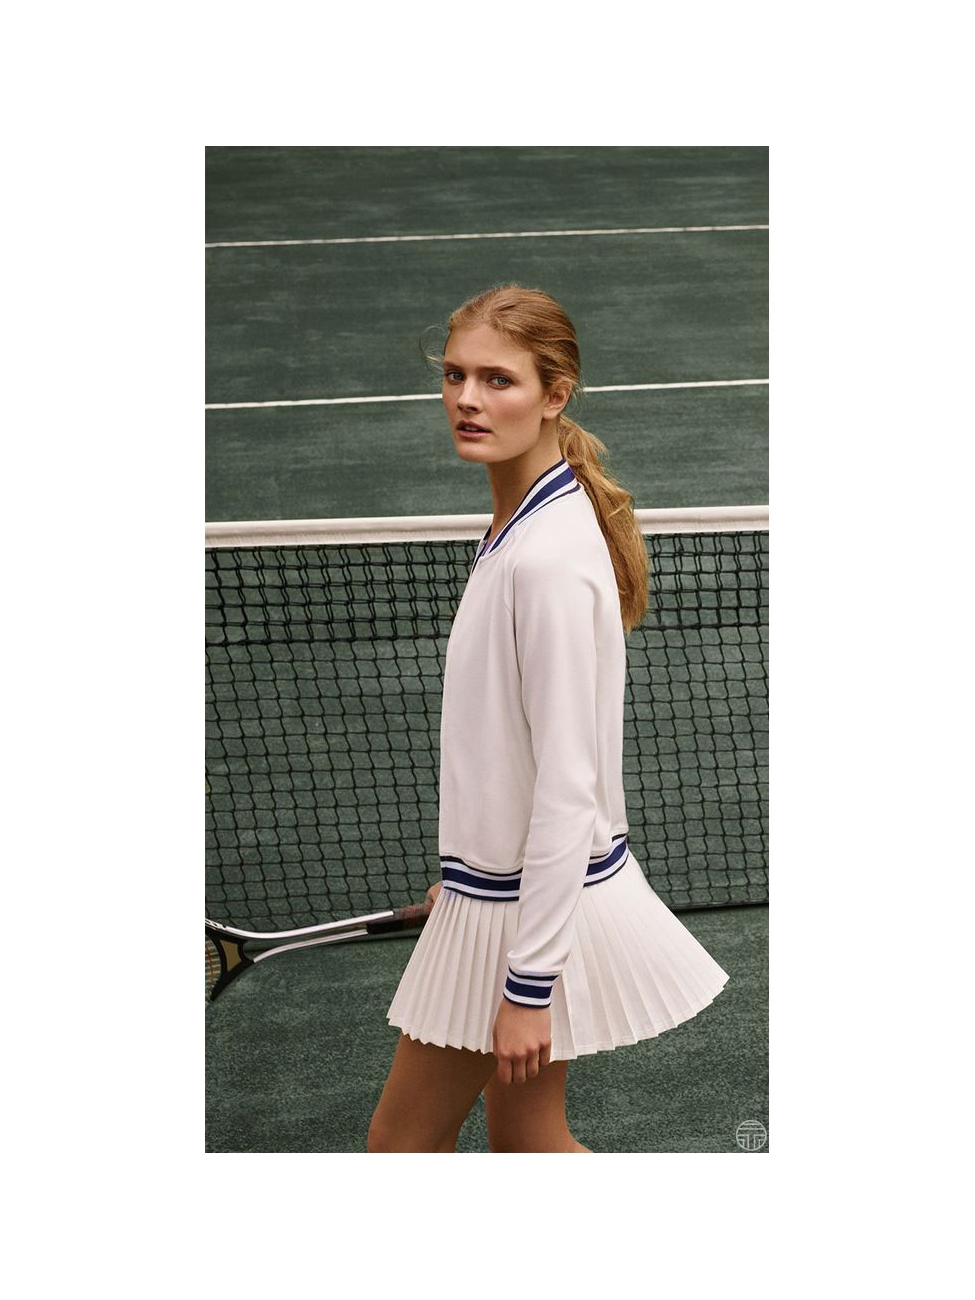 Boutique LACOSTE Mini jupe de tennis plissée blanche et bleu marine Taille  36